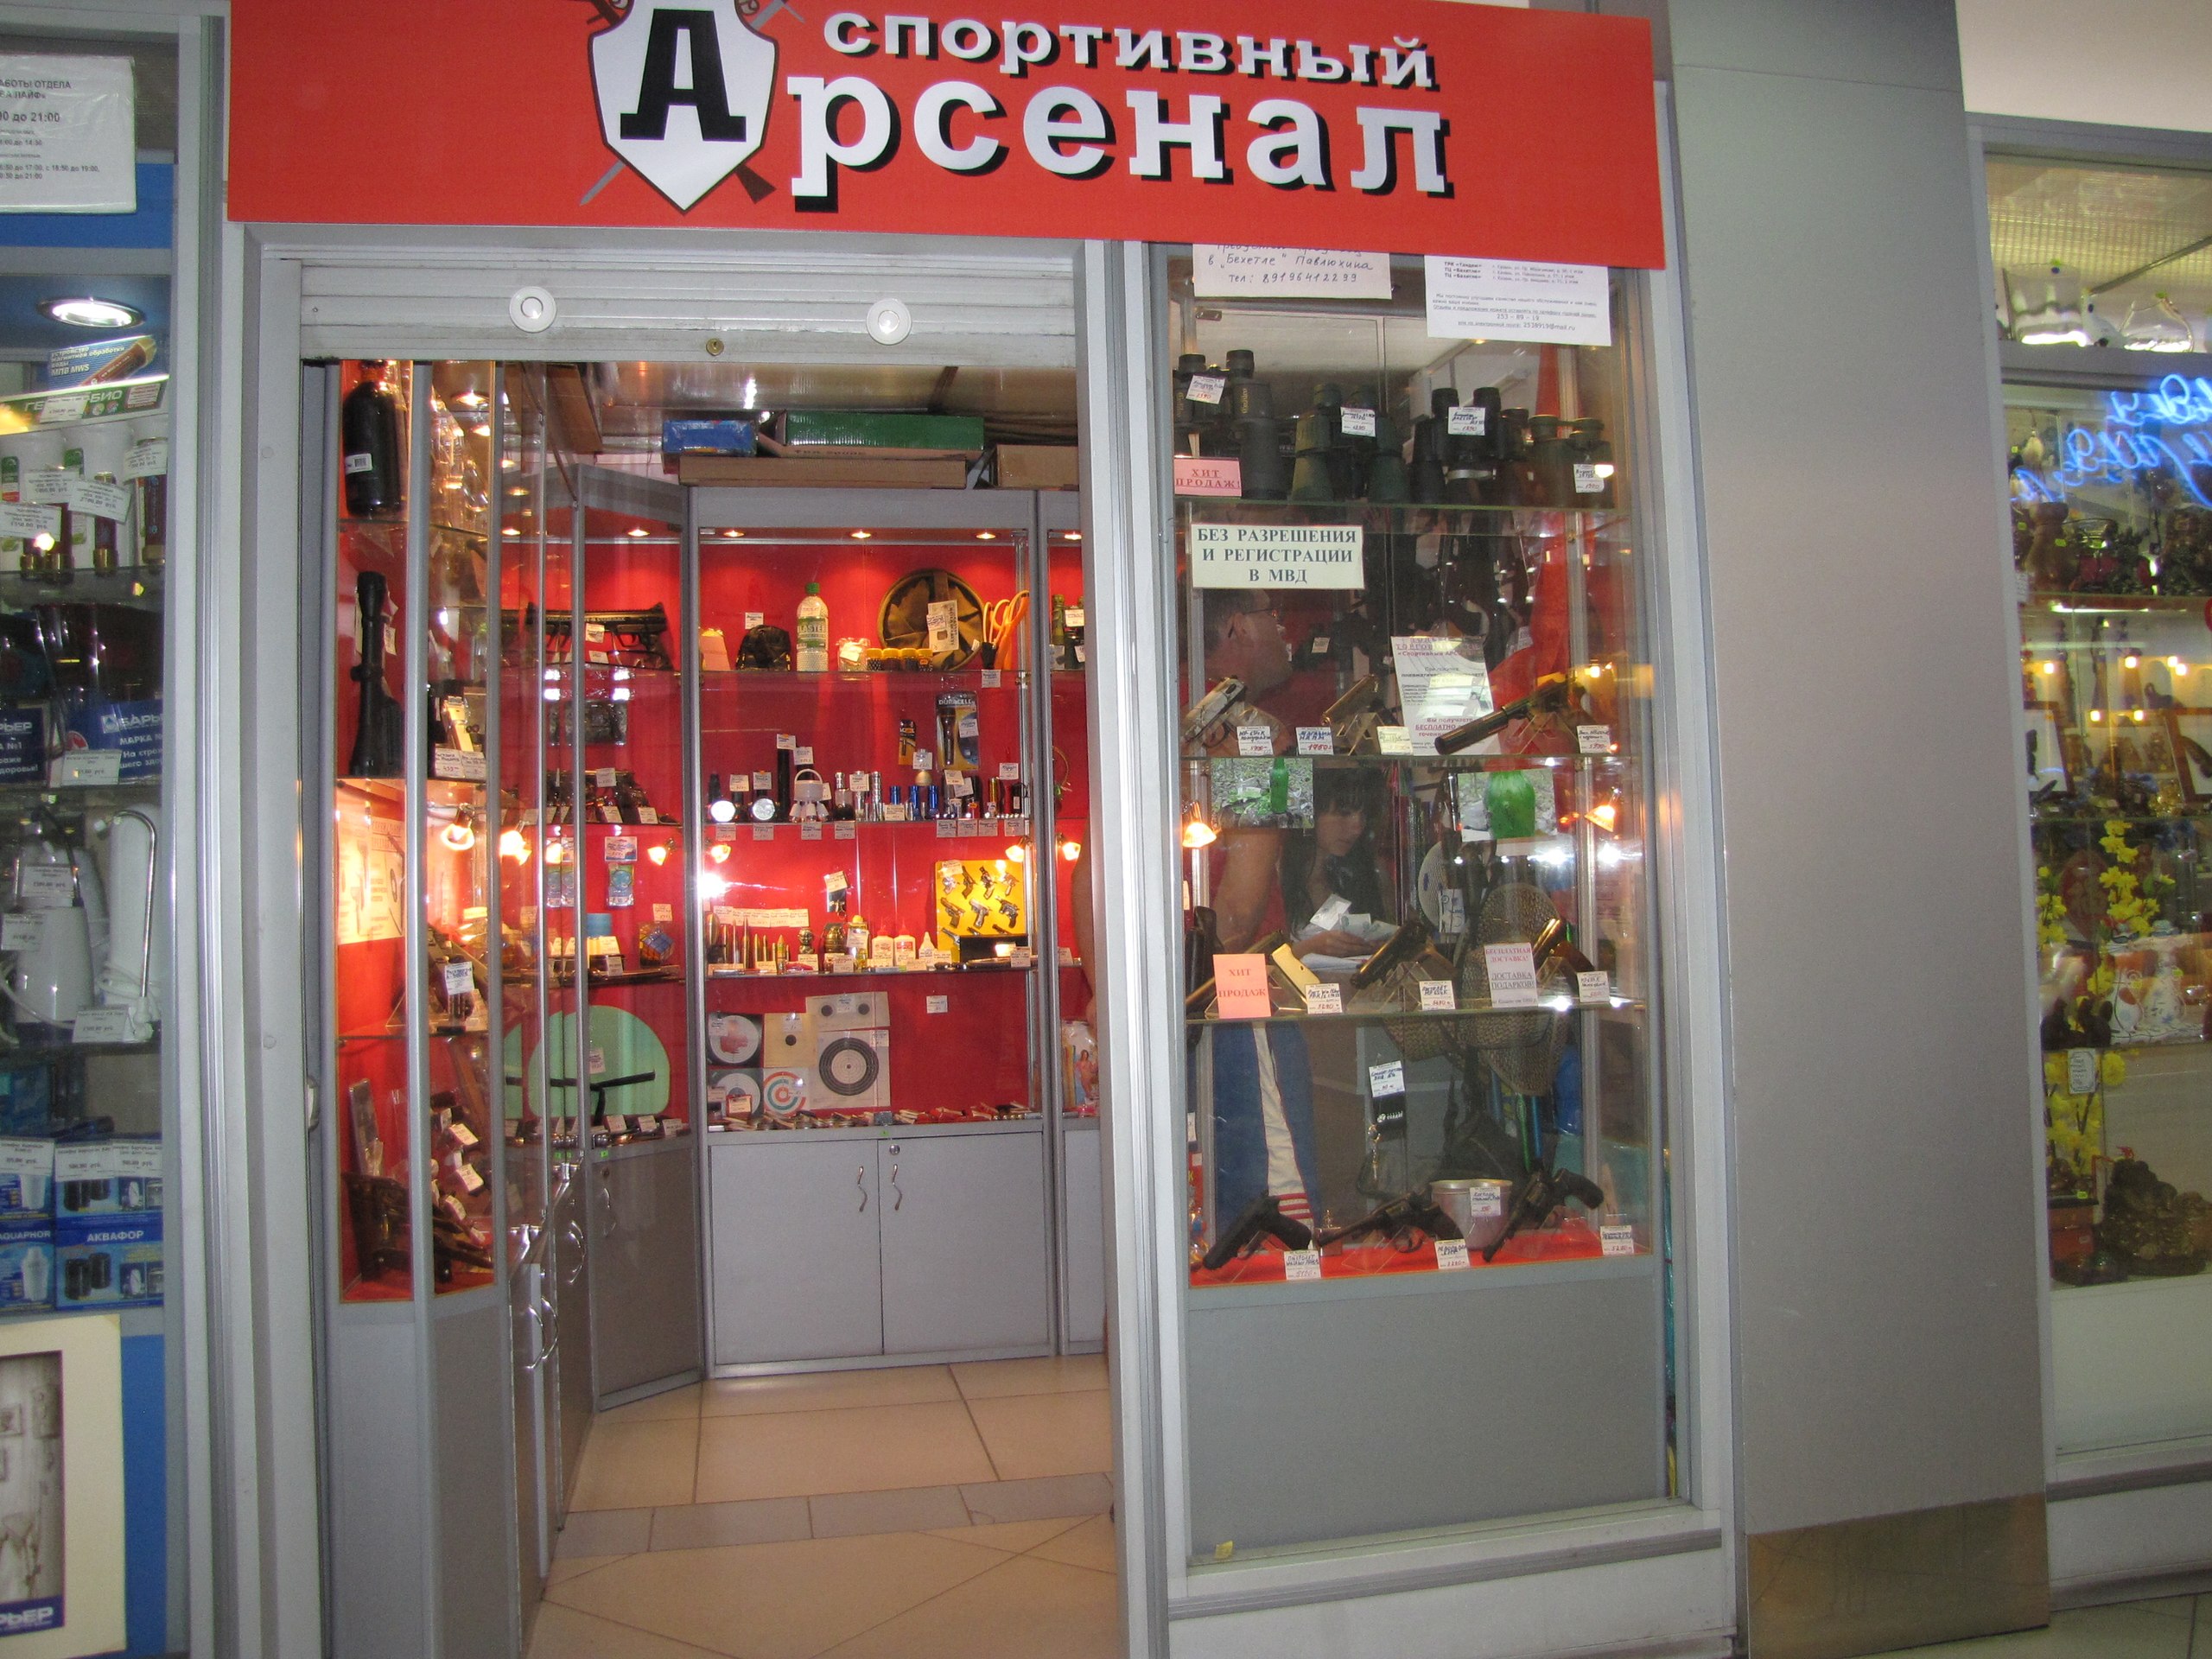 Магазин "Спортивный арсенал" на Ибрагимова в Казани